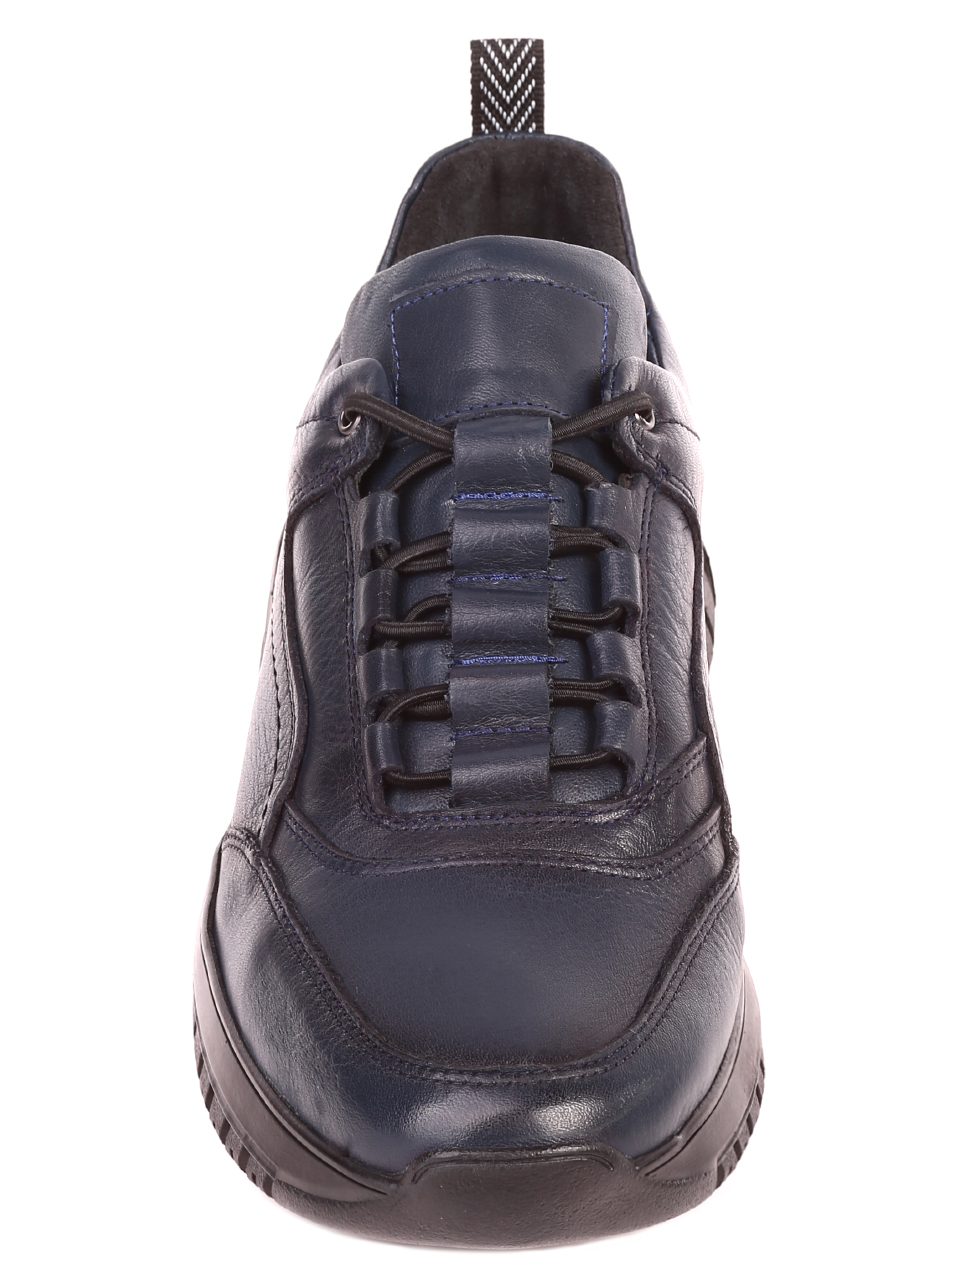 Ежедневни мъжки обувки от естествена кожа 7AT-21851 navy